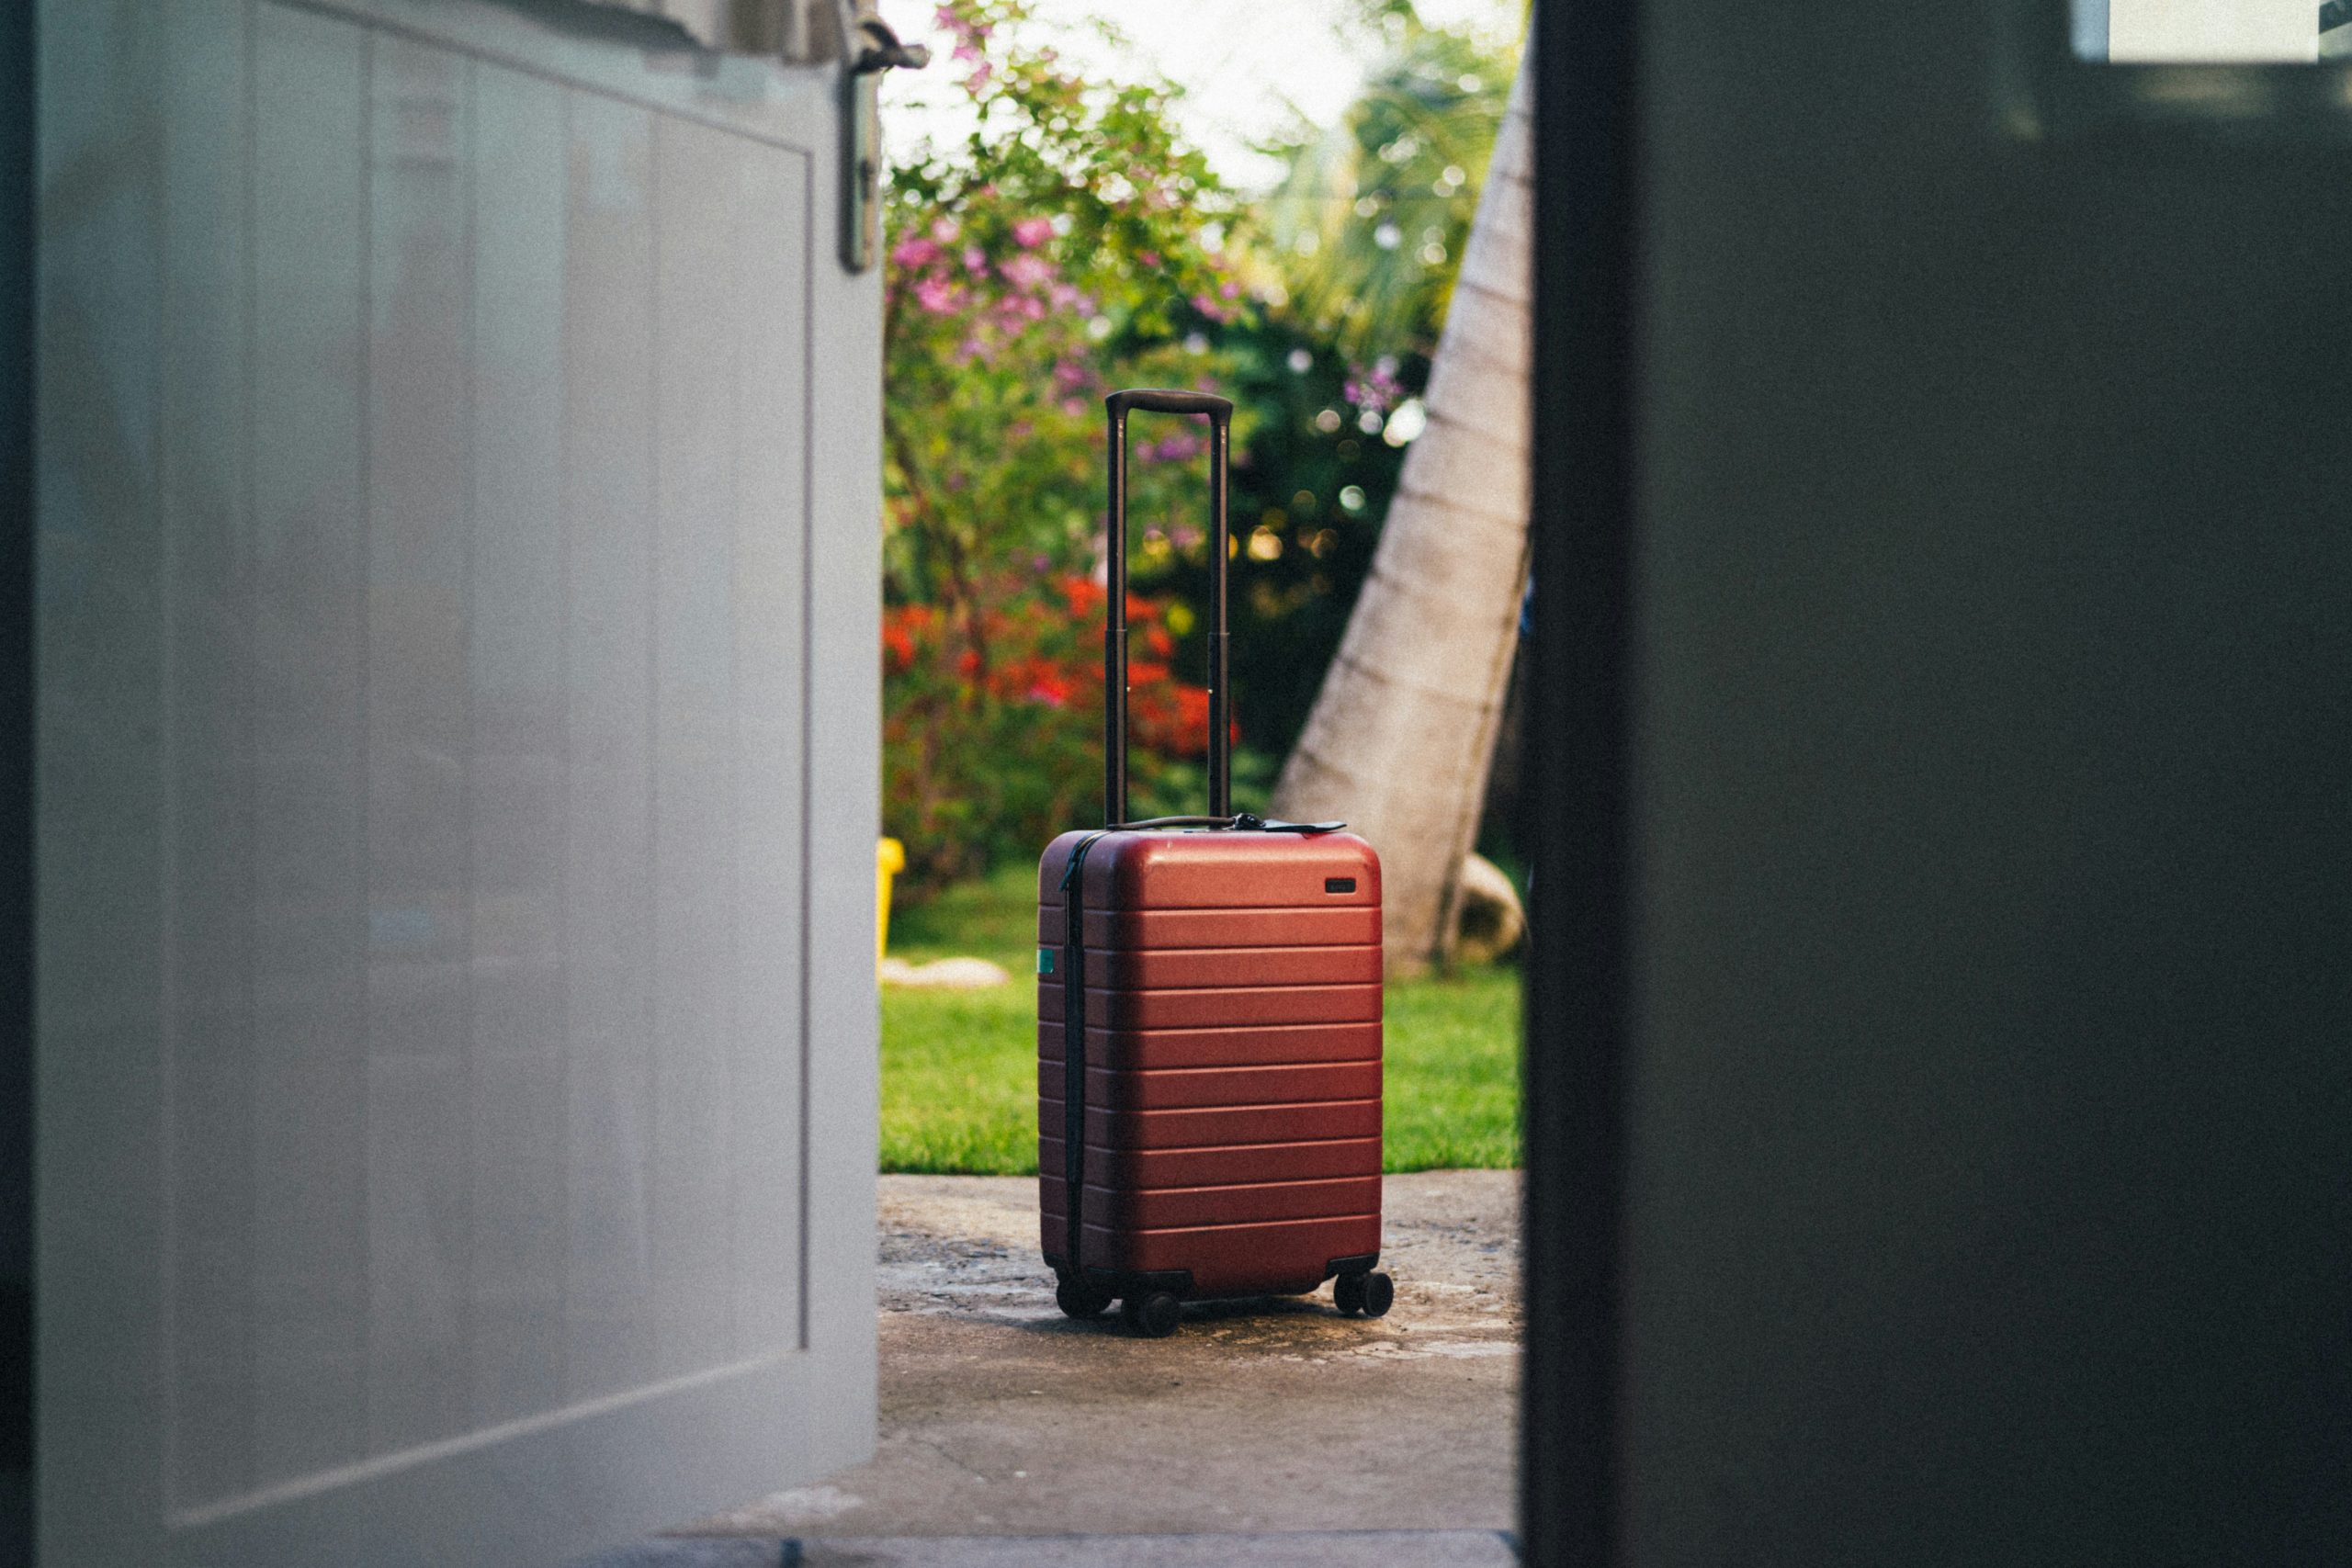 découvrez notre sélection de valises de voyage pour des aventures sans souci. qualité, durabilité et style à portée de main.